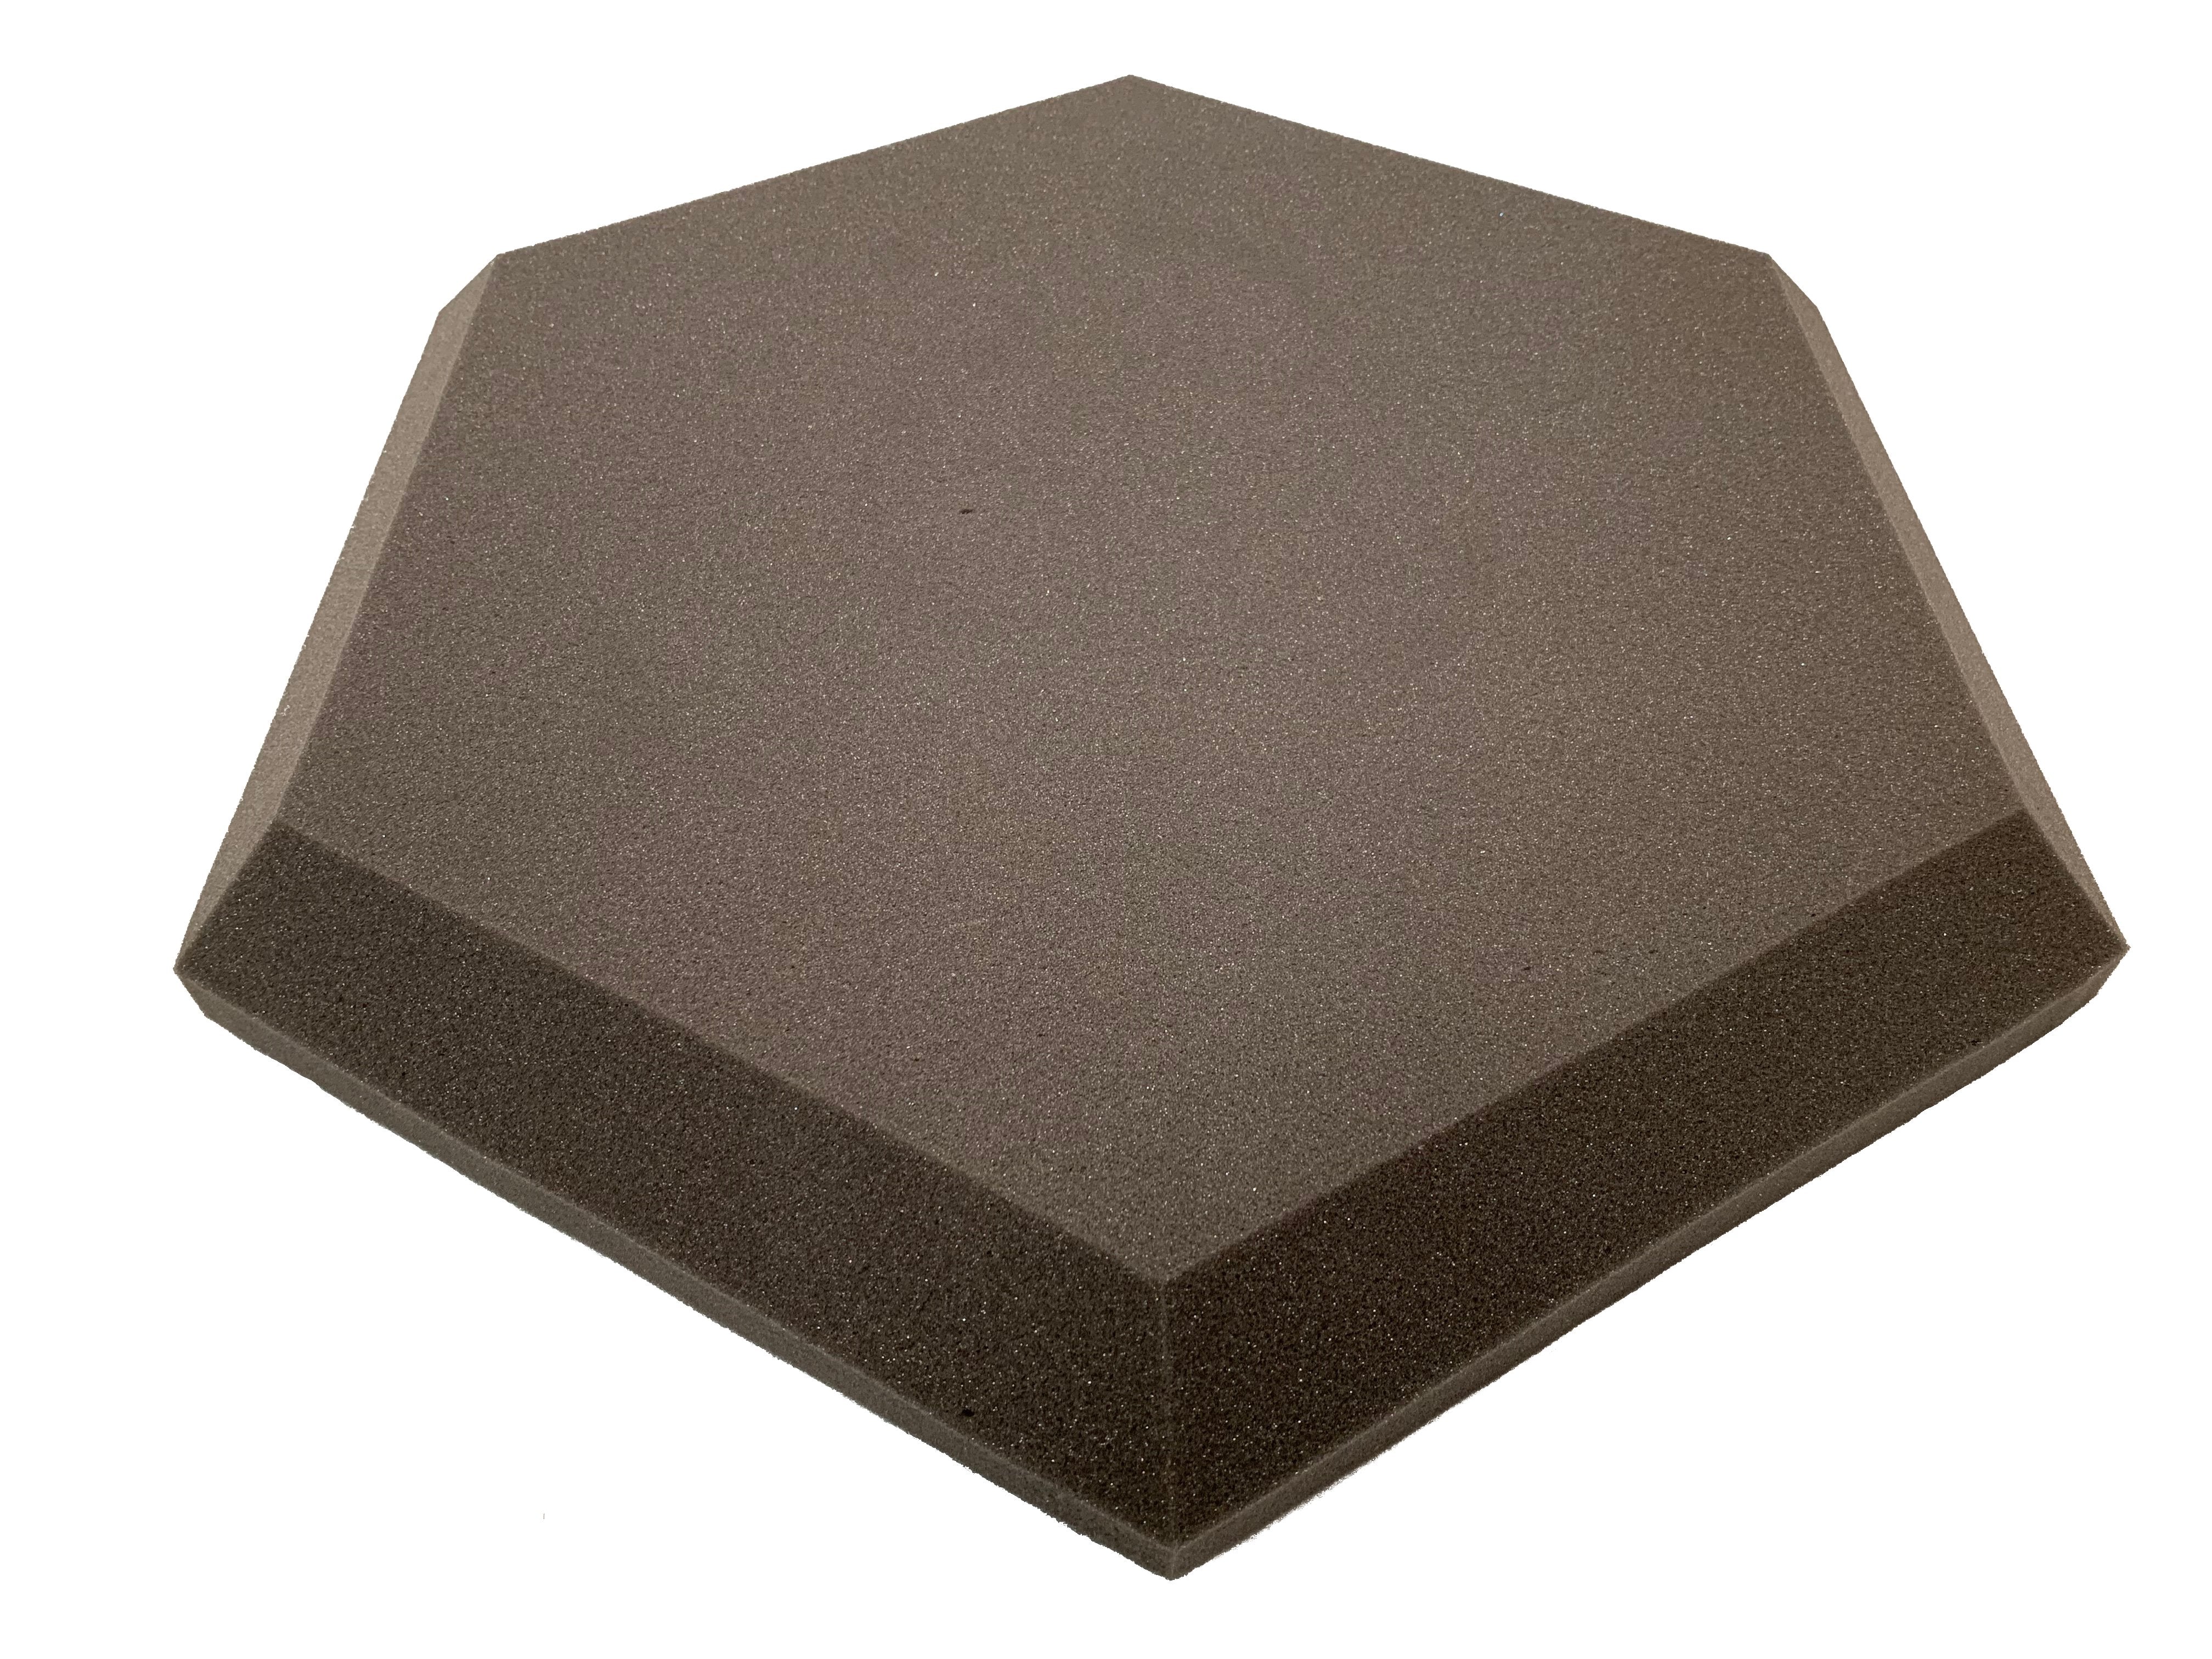 Hexatile3 Acoustic Studio Foam Tile Pack - Advanced Acoustics